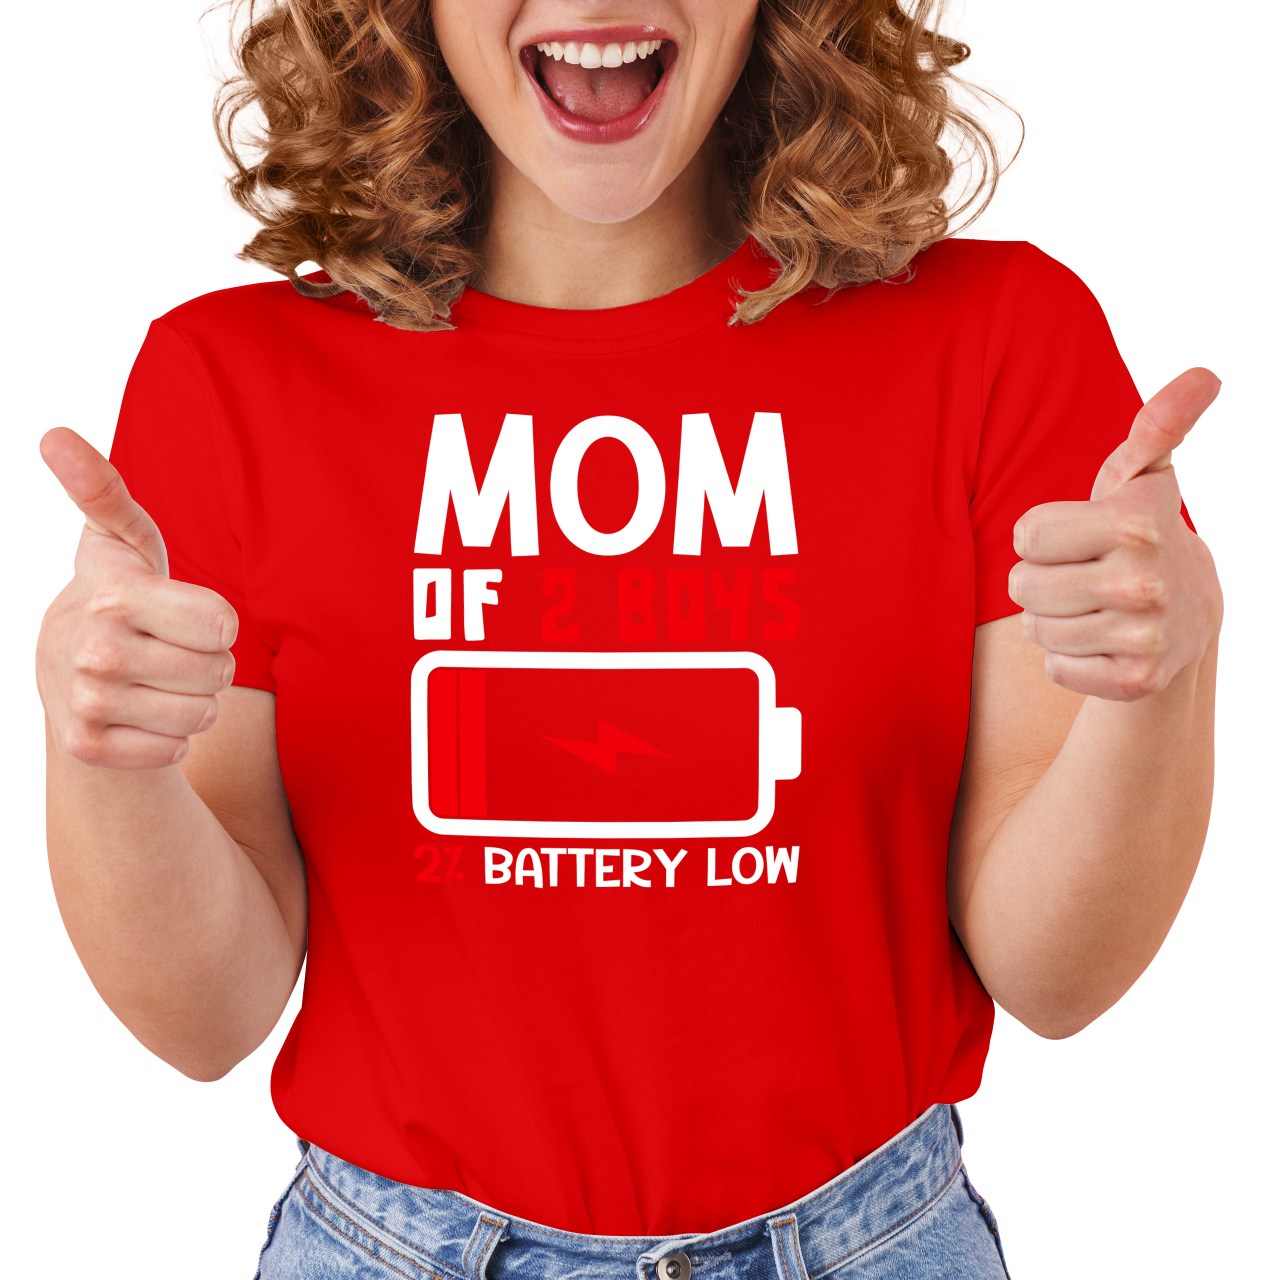 Dámské tričko s potiskem “Mom of 2 boys, battery low”